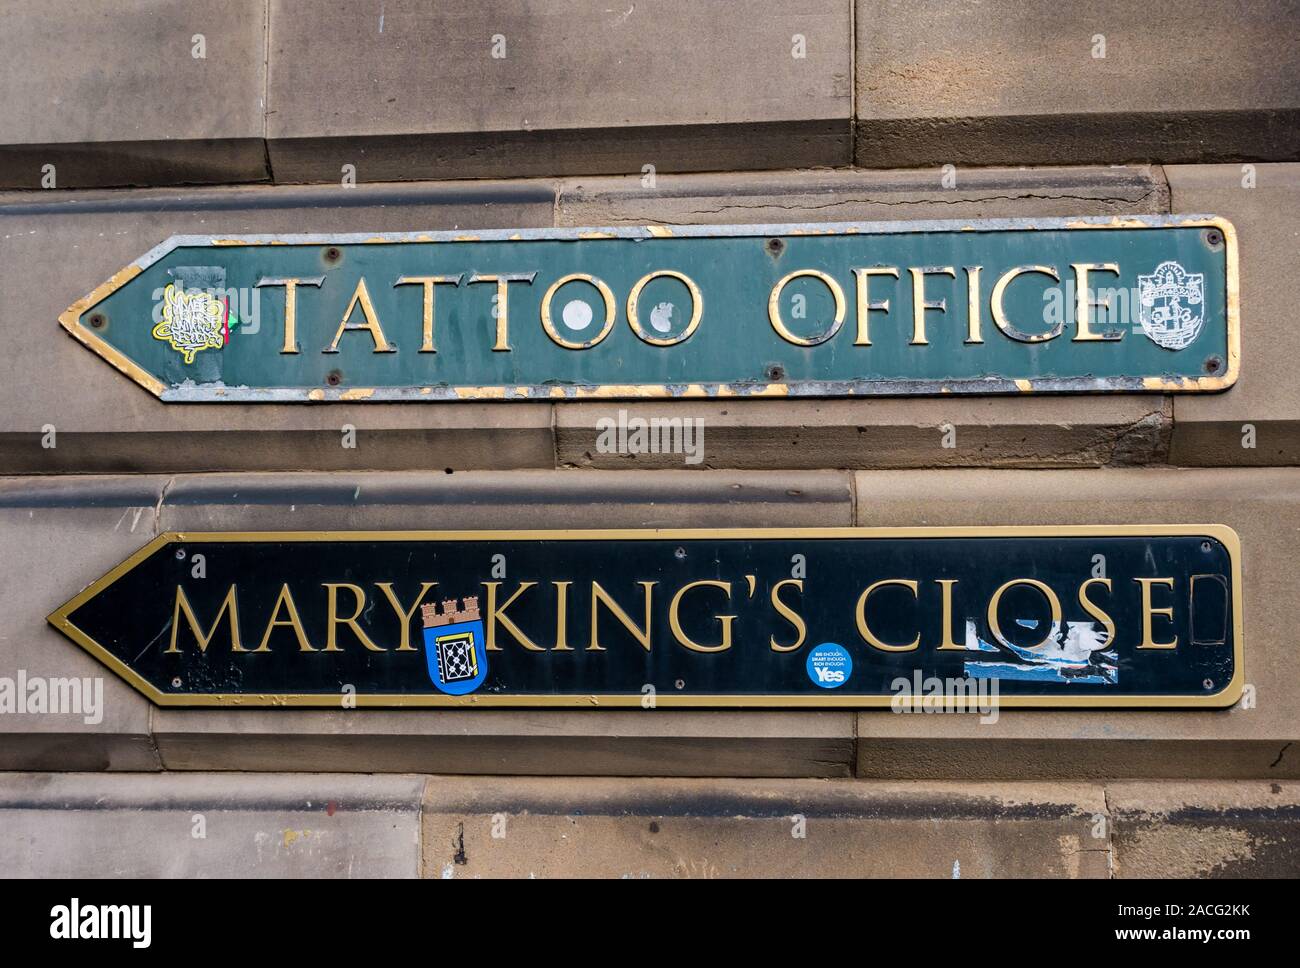 Indicazioni per Mary King's Close & Militari Tattoo Office sul muro di pietra arenaria, Edimburgo, Scozia, Regno Unito Foto Stock